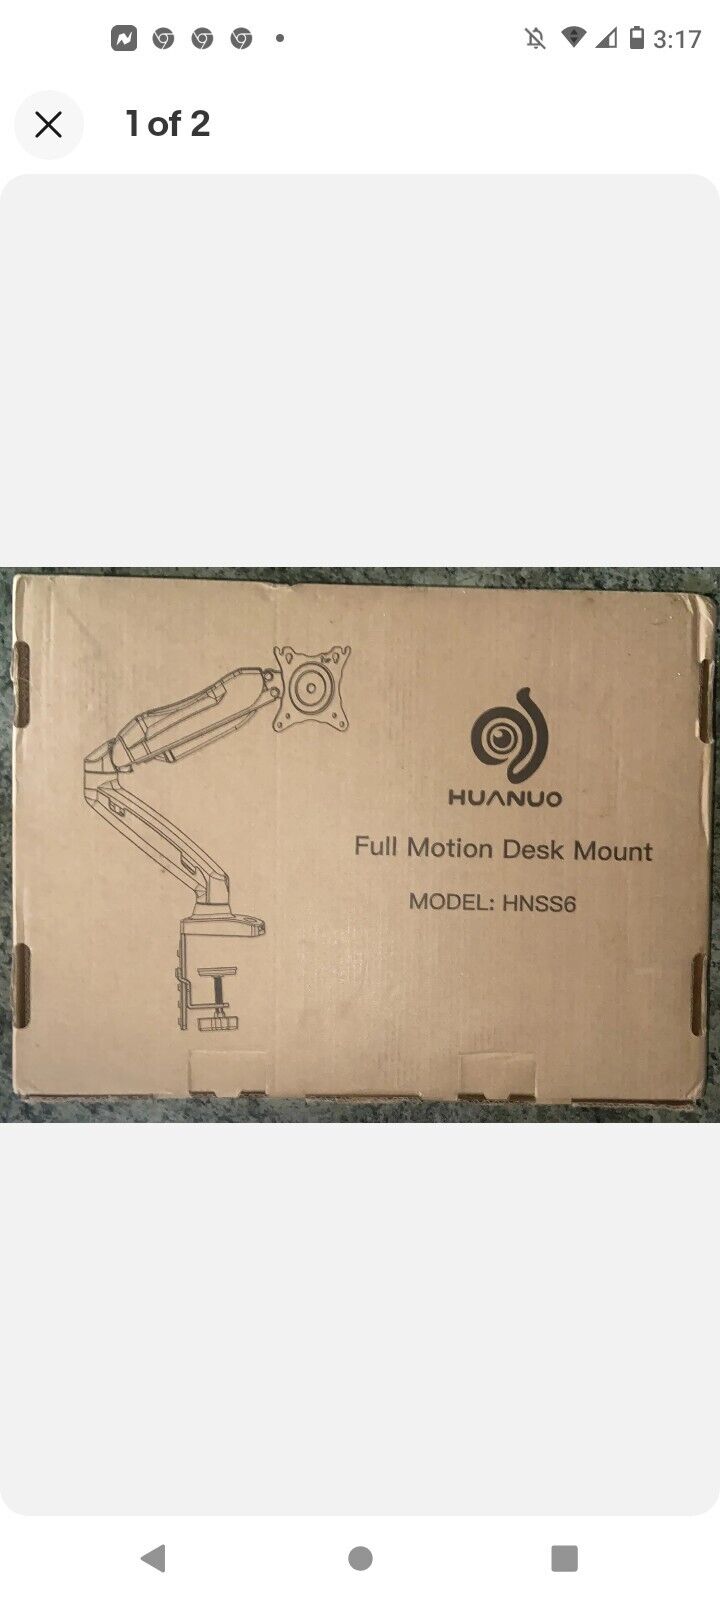 Huanuo Full Motion Desk Mount HNSS6